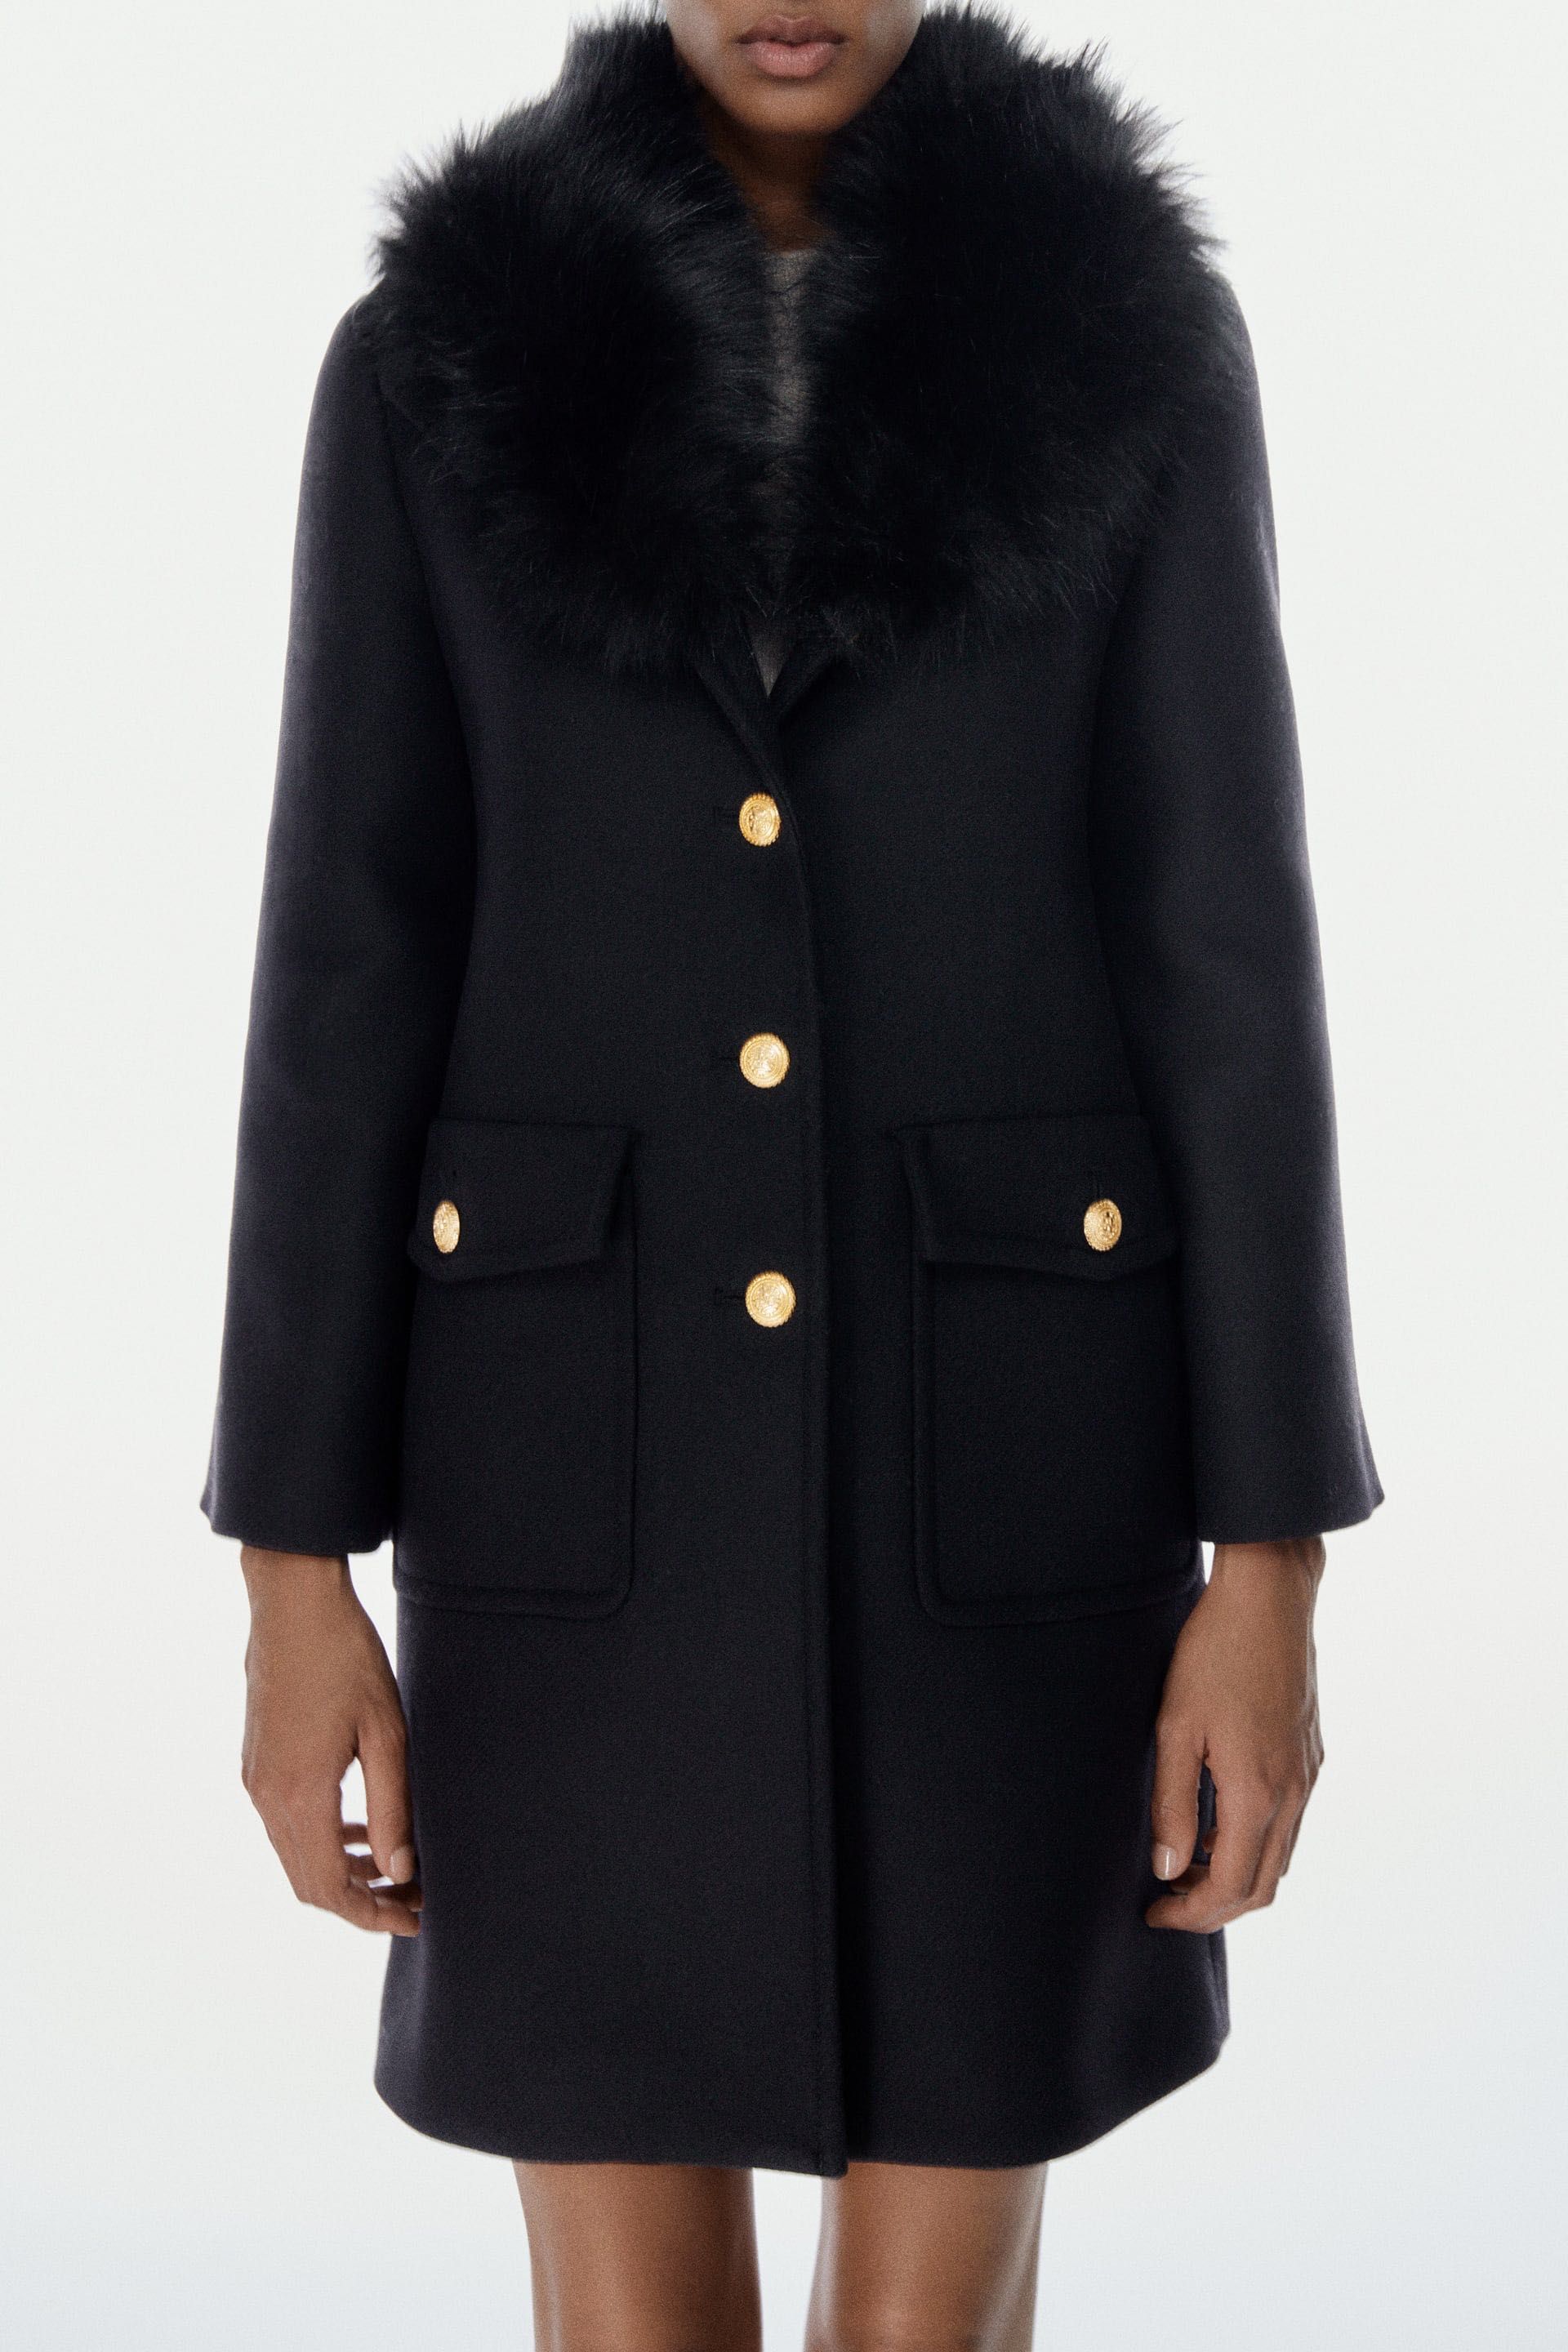 Palton Zara Manteco negru blanita butoni aurii lana colectie noua